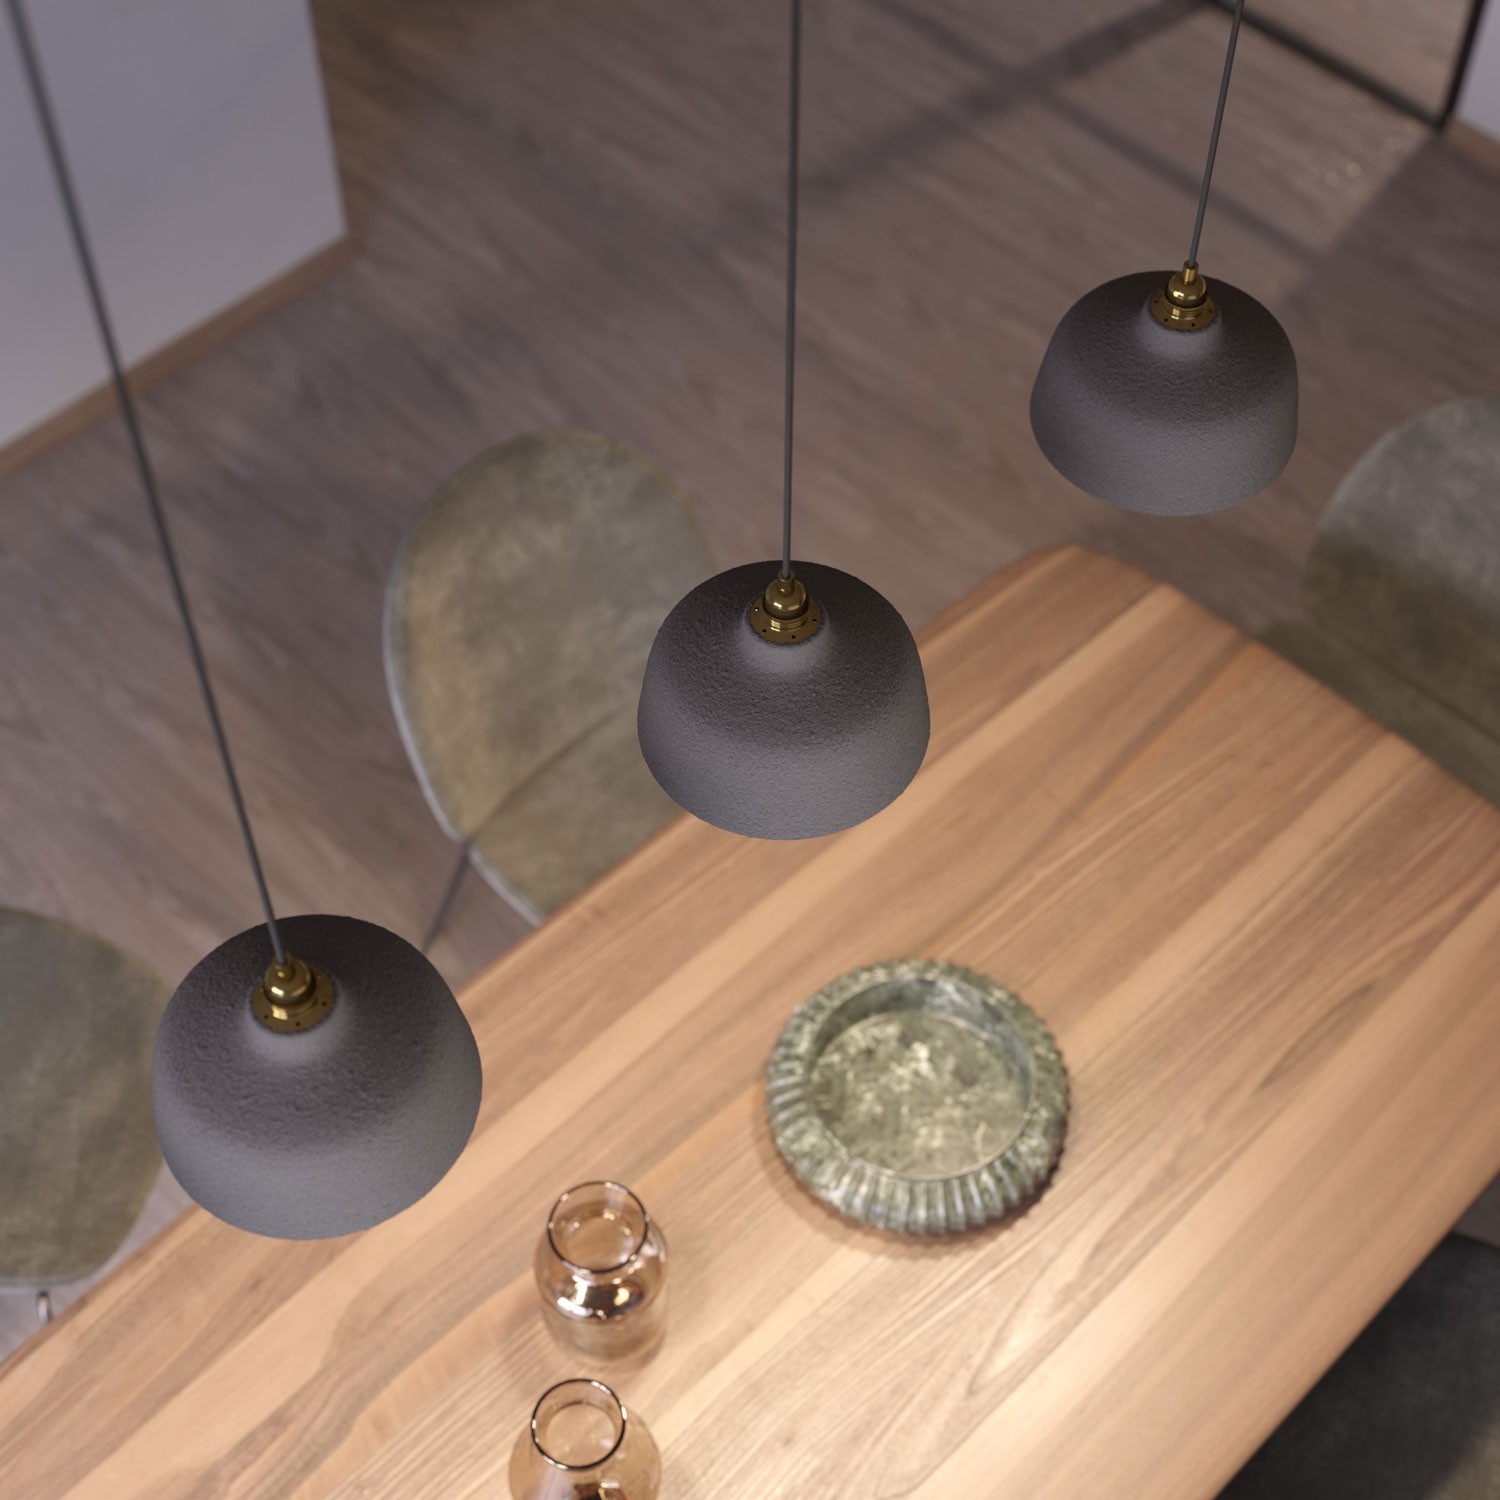 Viseče svetilo s tekstilnim kablom in keramičnim senčilom v obliki skodelice - Izdelano v Italiji